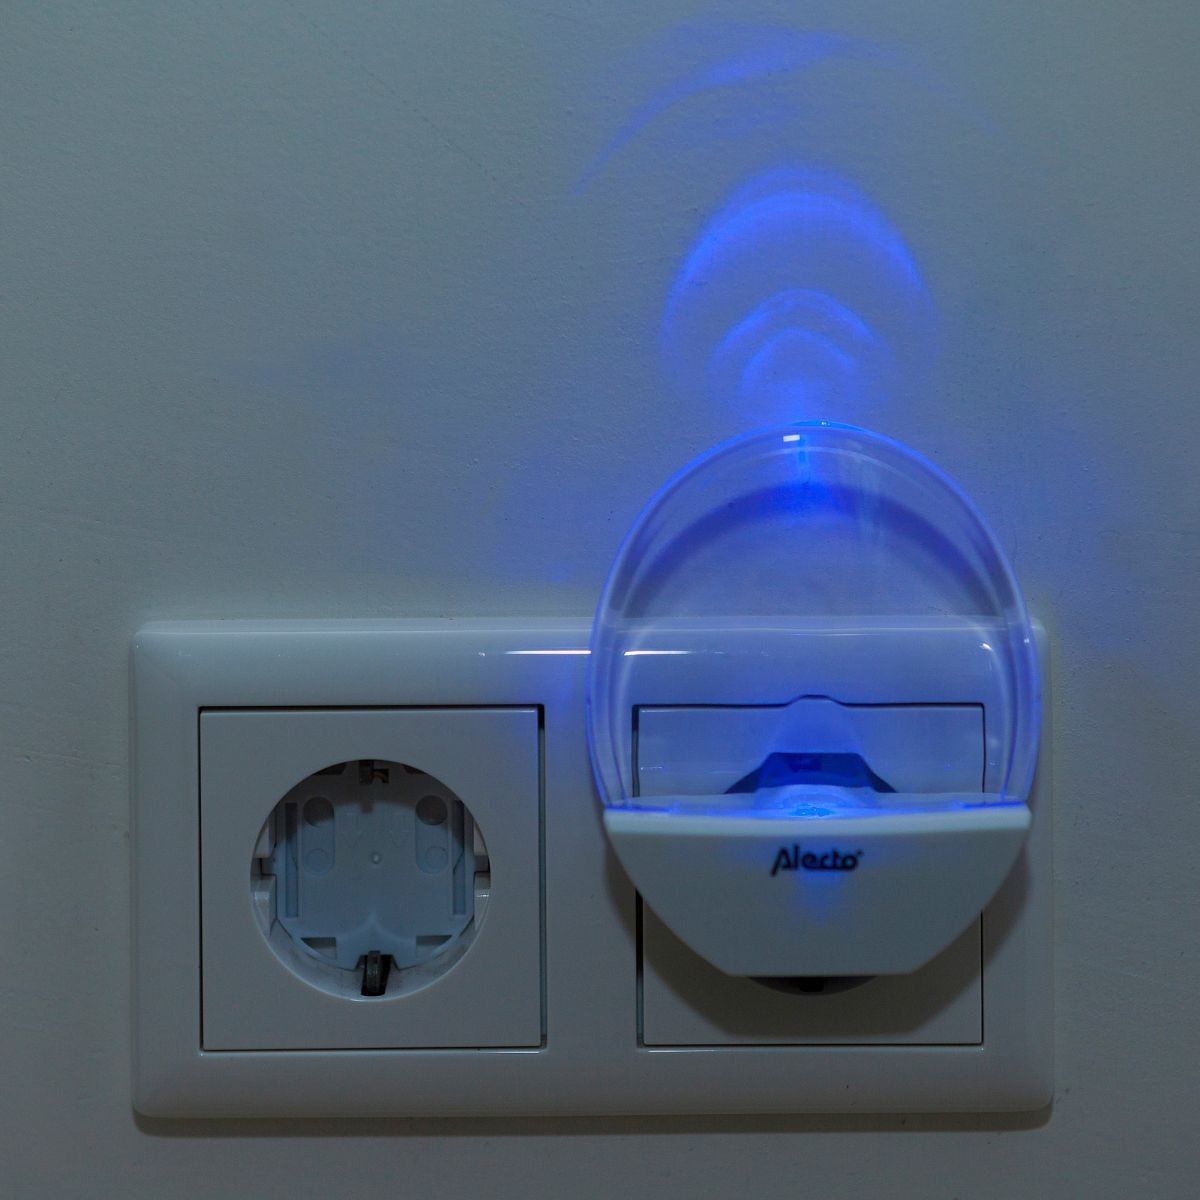 Verlicht de baby- of kinderkamer subtiel met het nachtlampje LED ANV van Alecto. Een energiezuinig lampje met lange levensduur. Wit lampje met blauwe verlichting. Ook bijvoorbeeld handig in de gang. VanZus